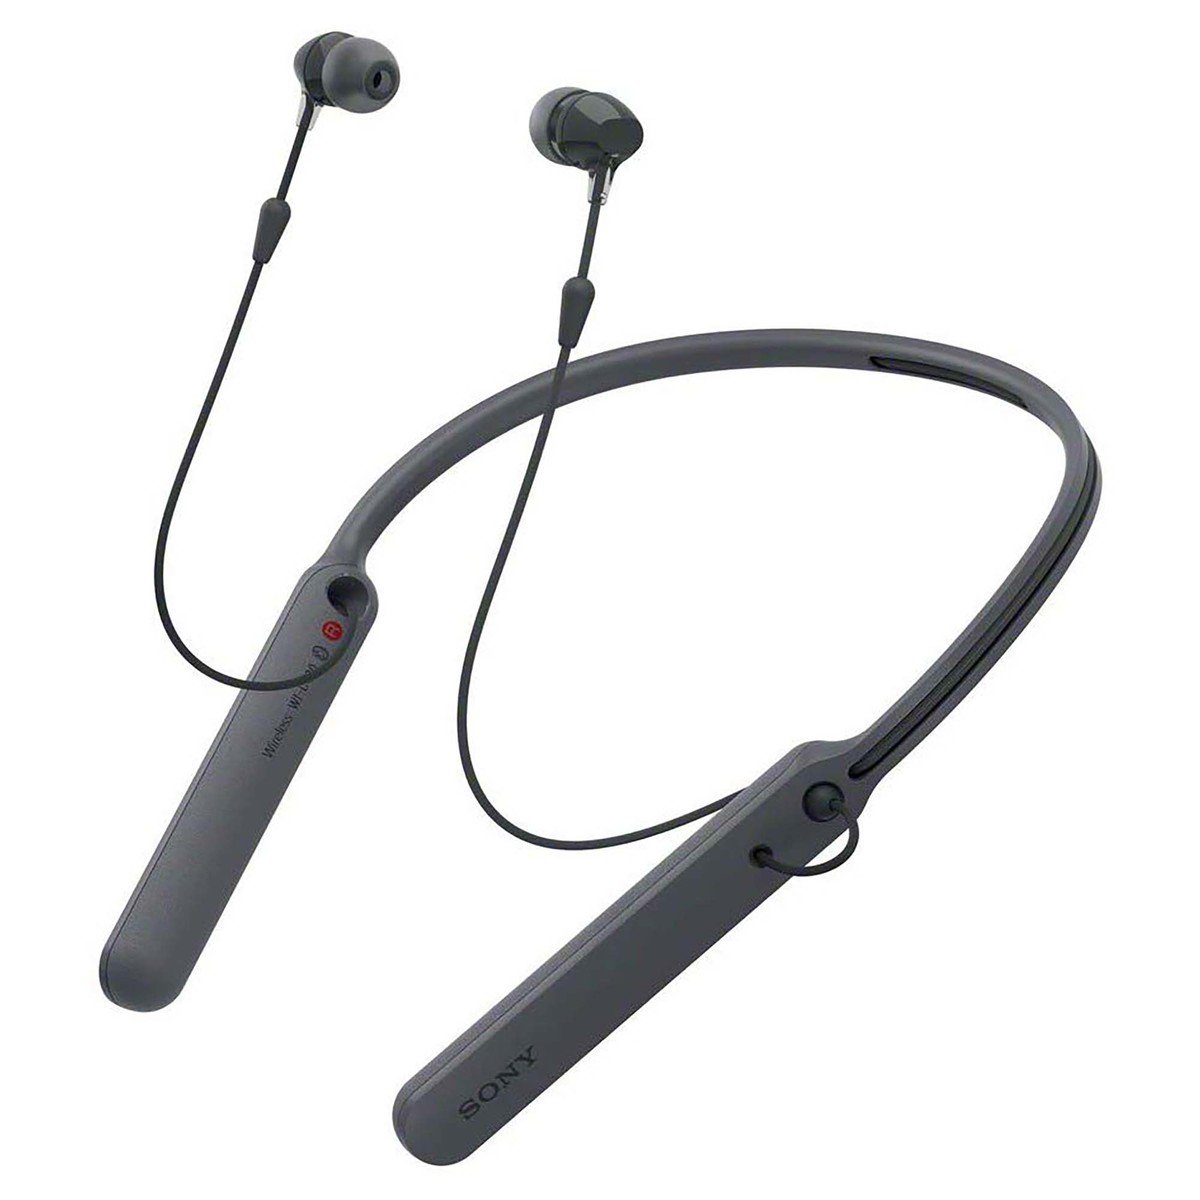 Sony WIC400 Wireless Behind-Neck In Ear Headphone, Black